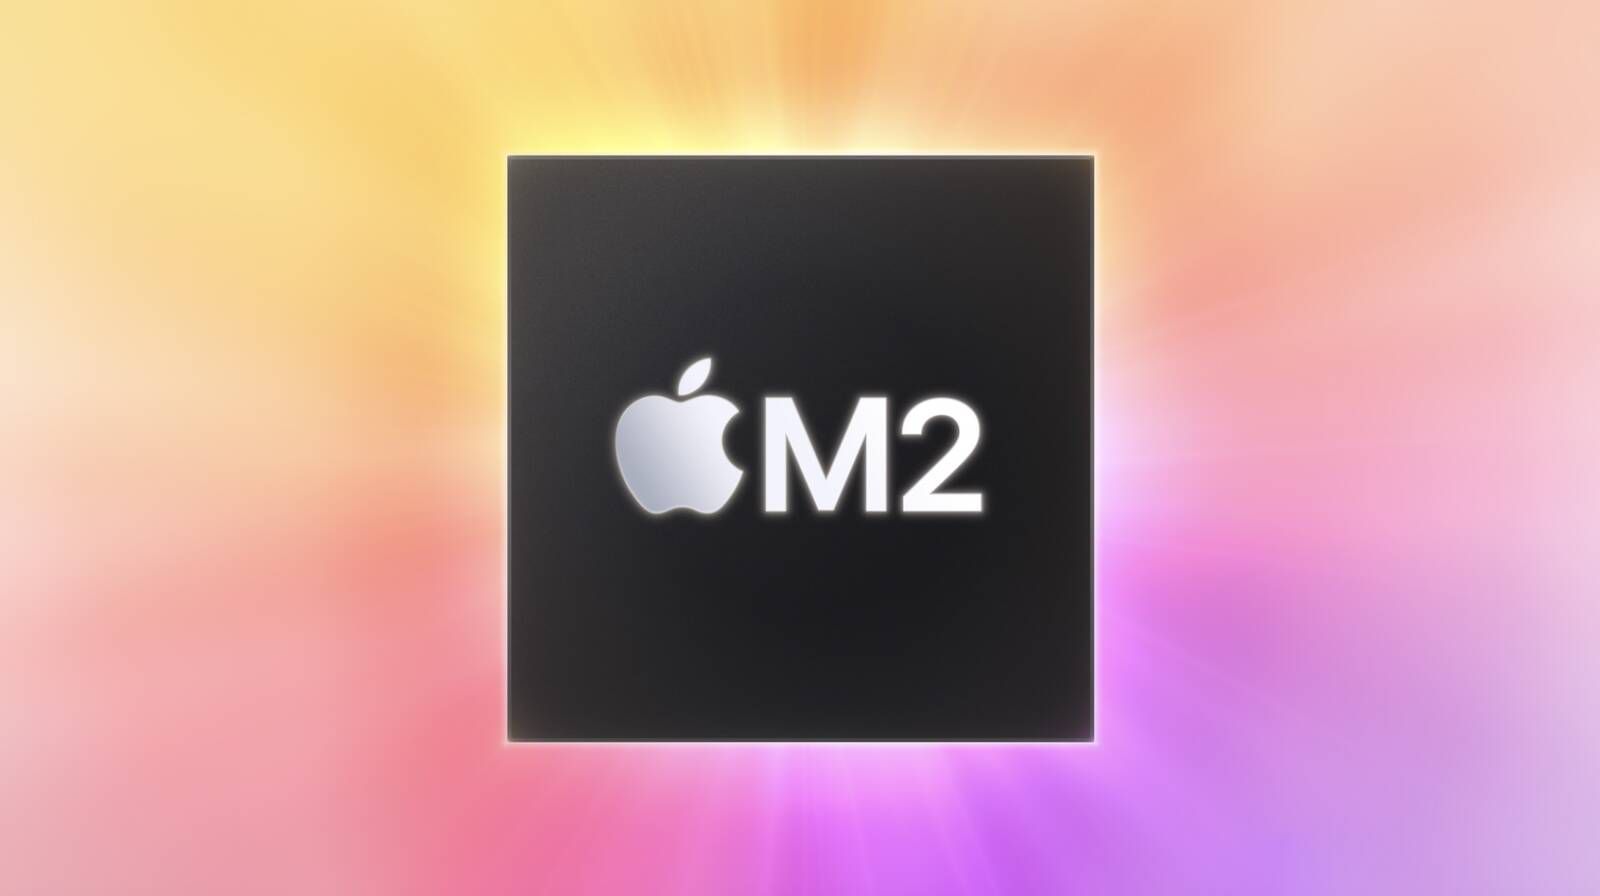 Куо: Новый 15-дюймовый MacBook с вариантами чипов M2 и M2 Pro запланирован на 2023 год